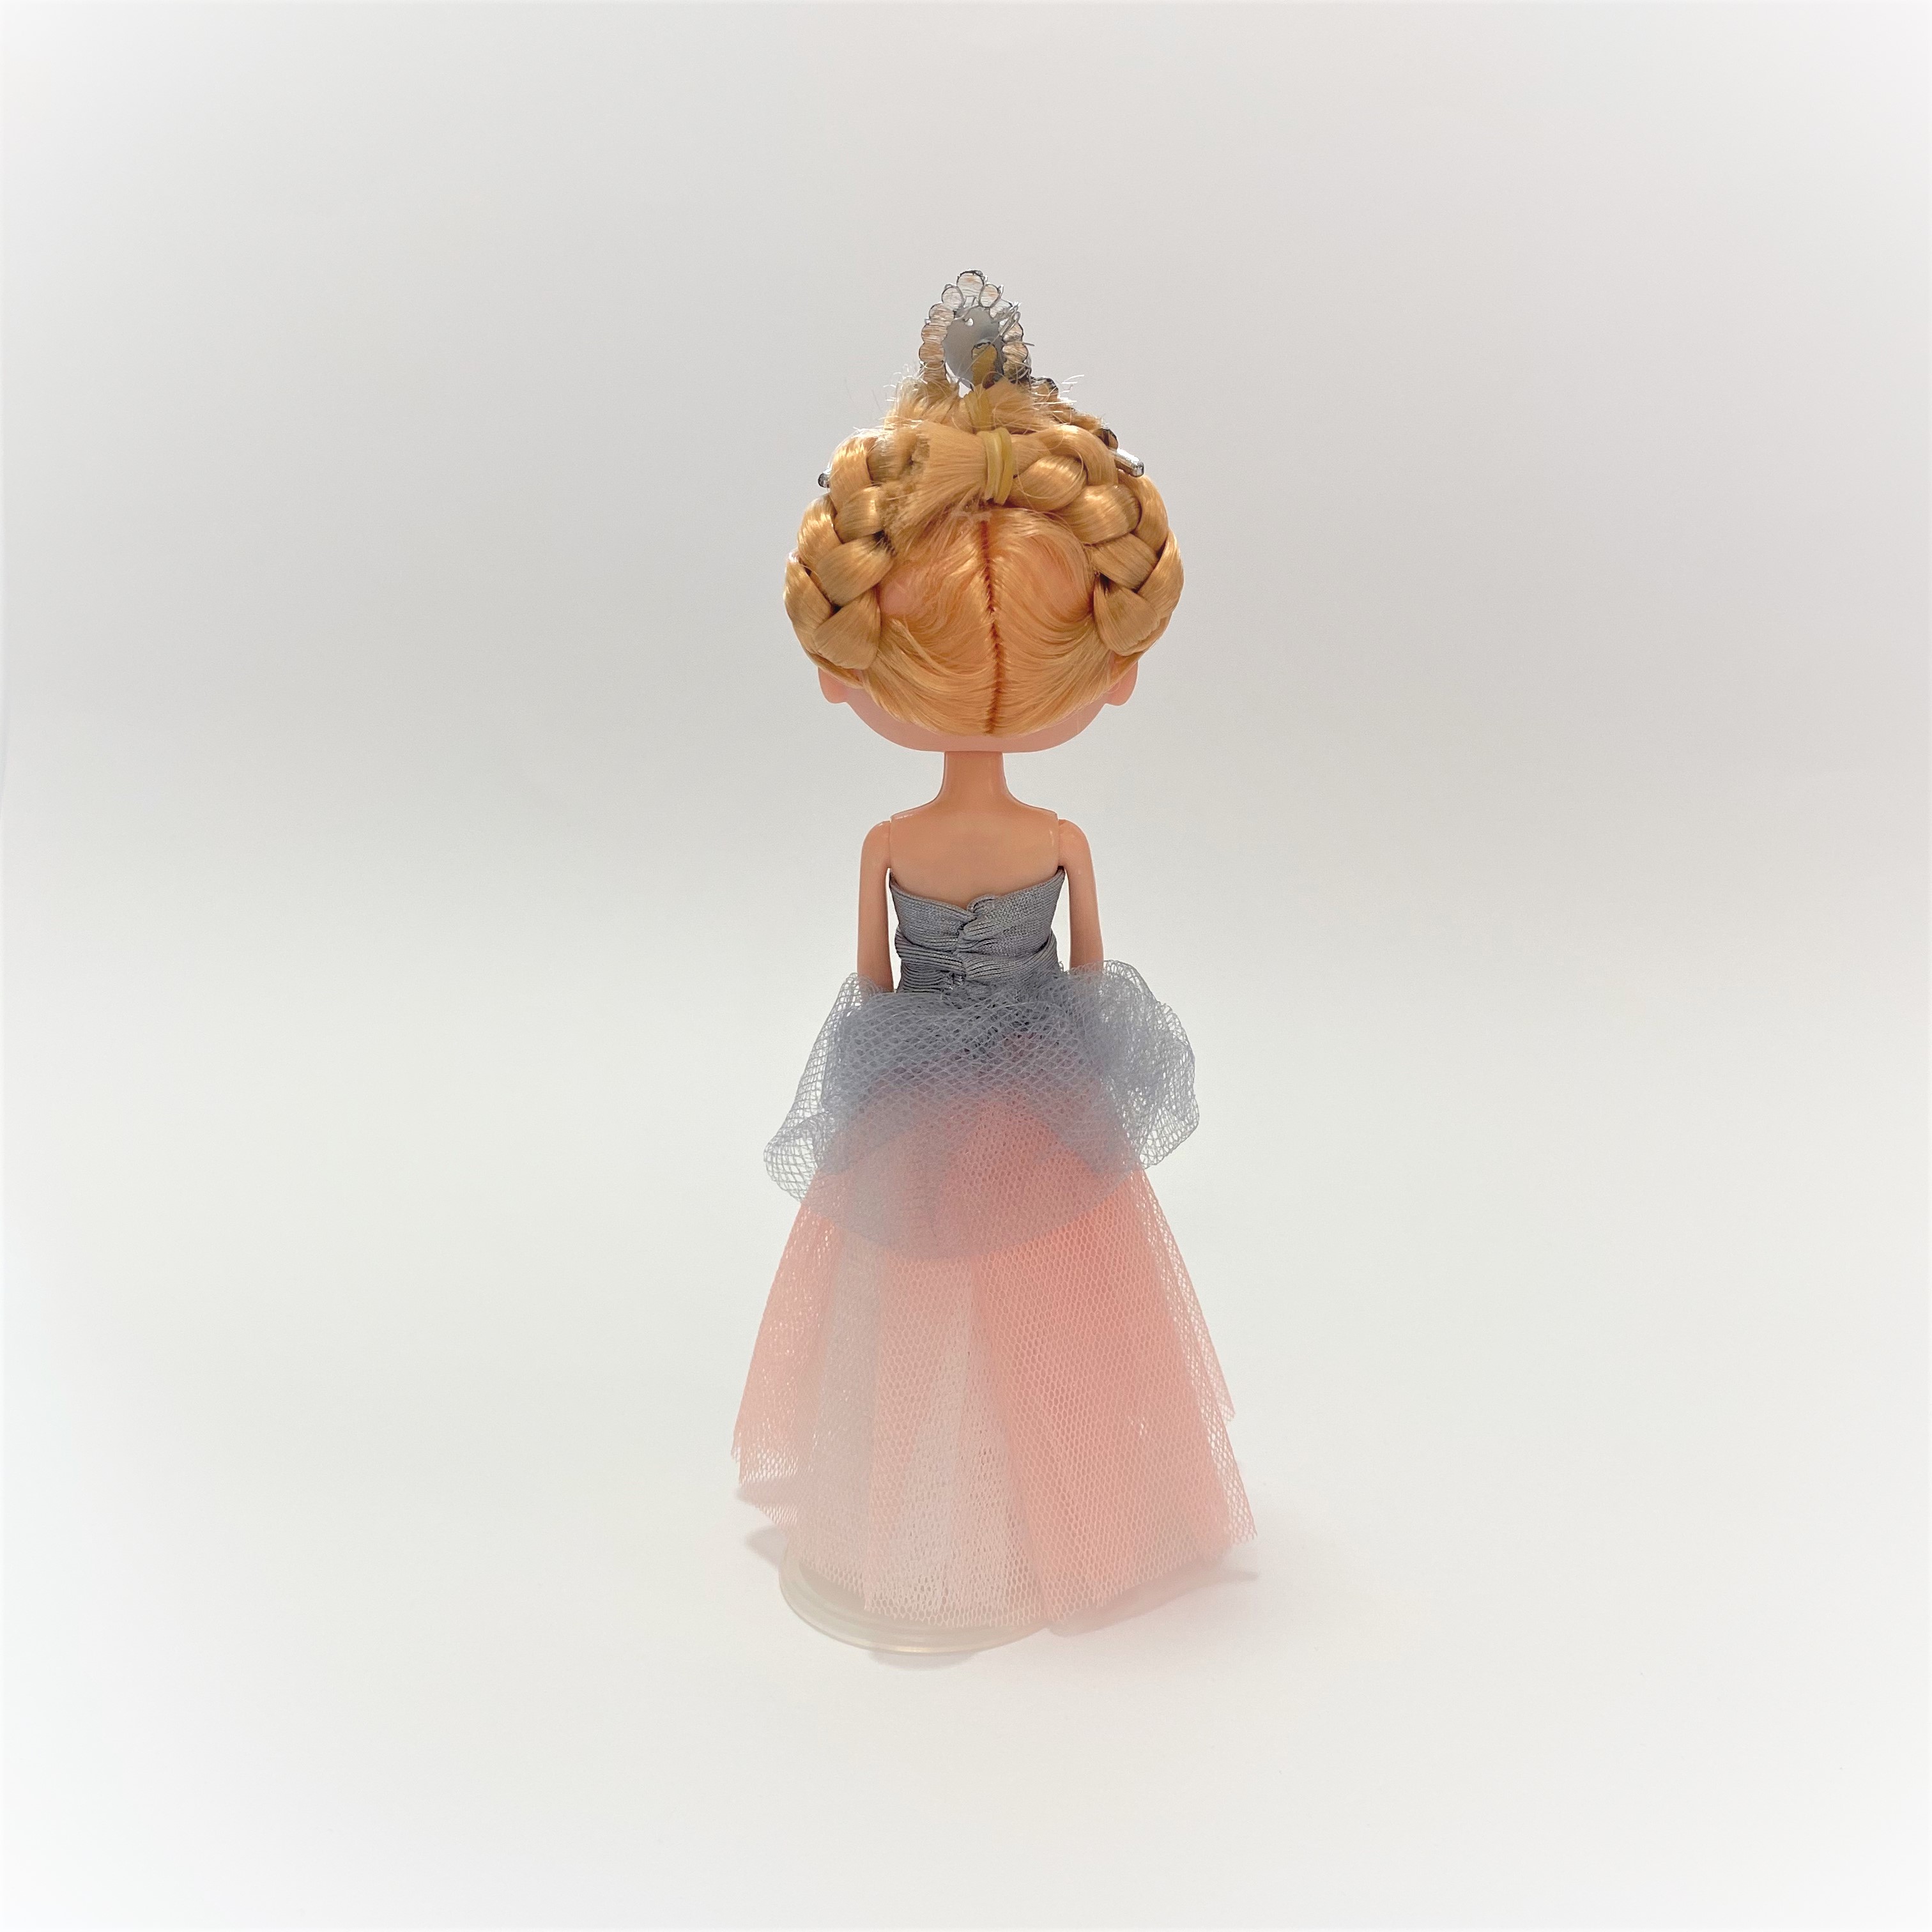 ウクライナ直輸入 バレエ衣装製作のプロが作ったドレスを着たお人形 Base Mag